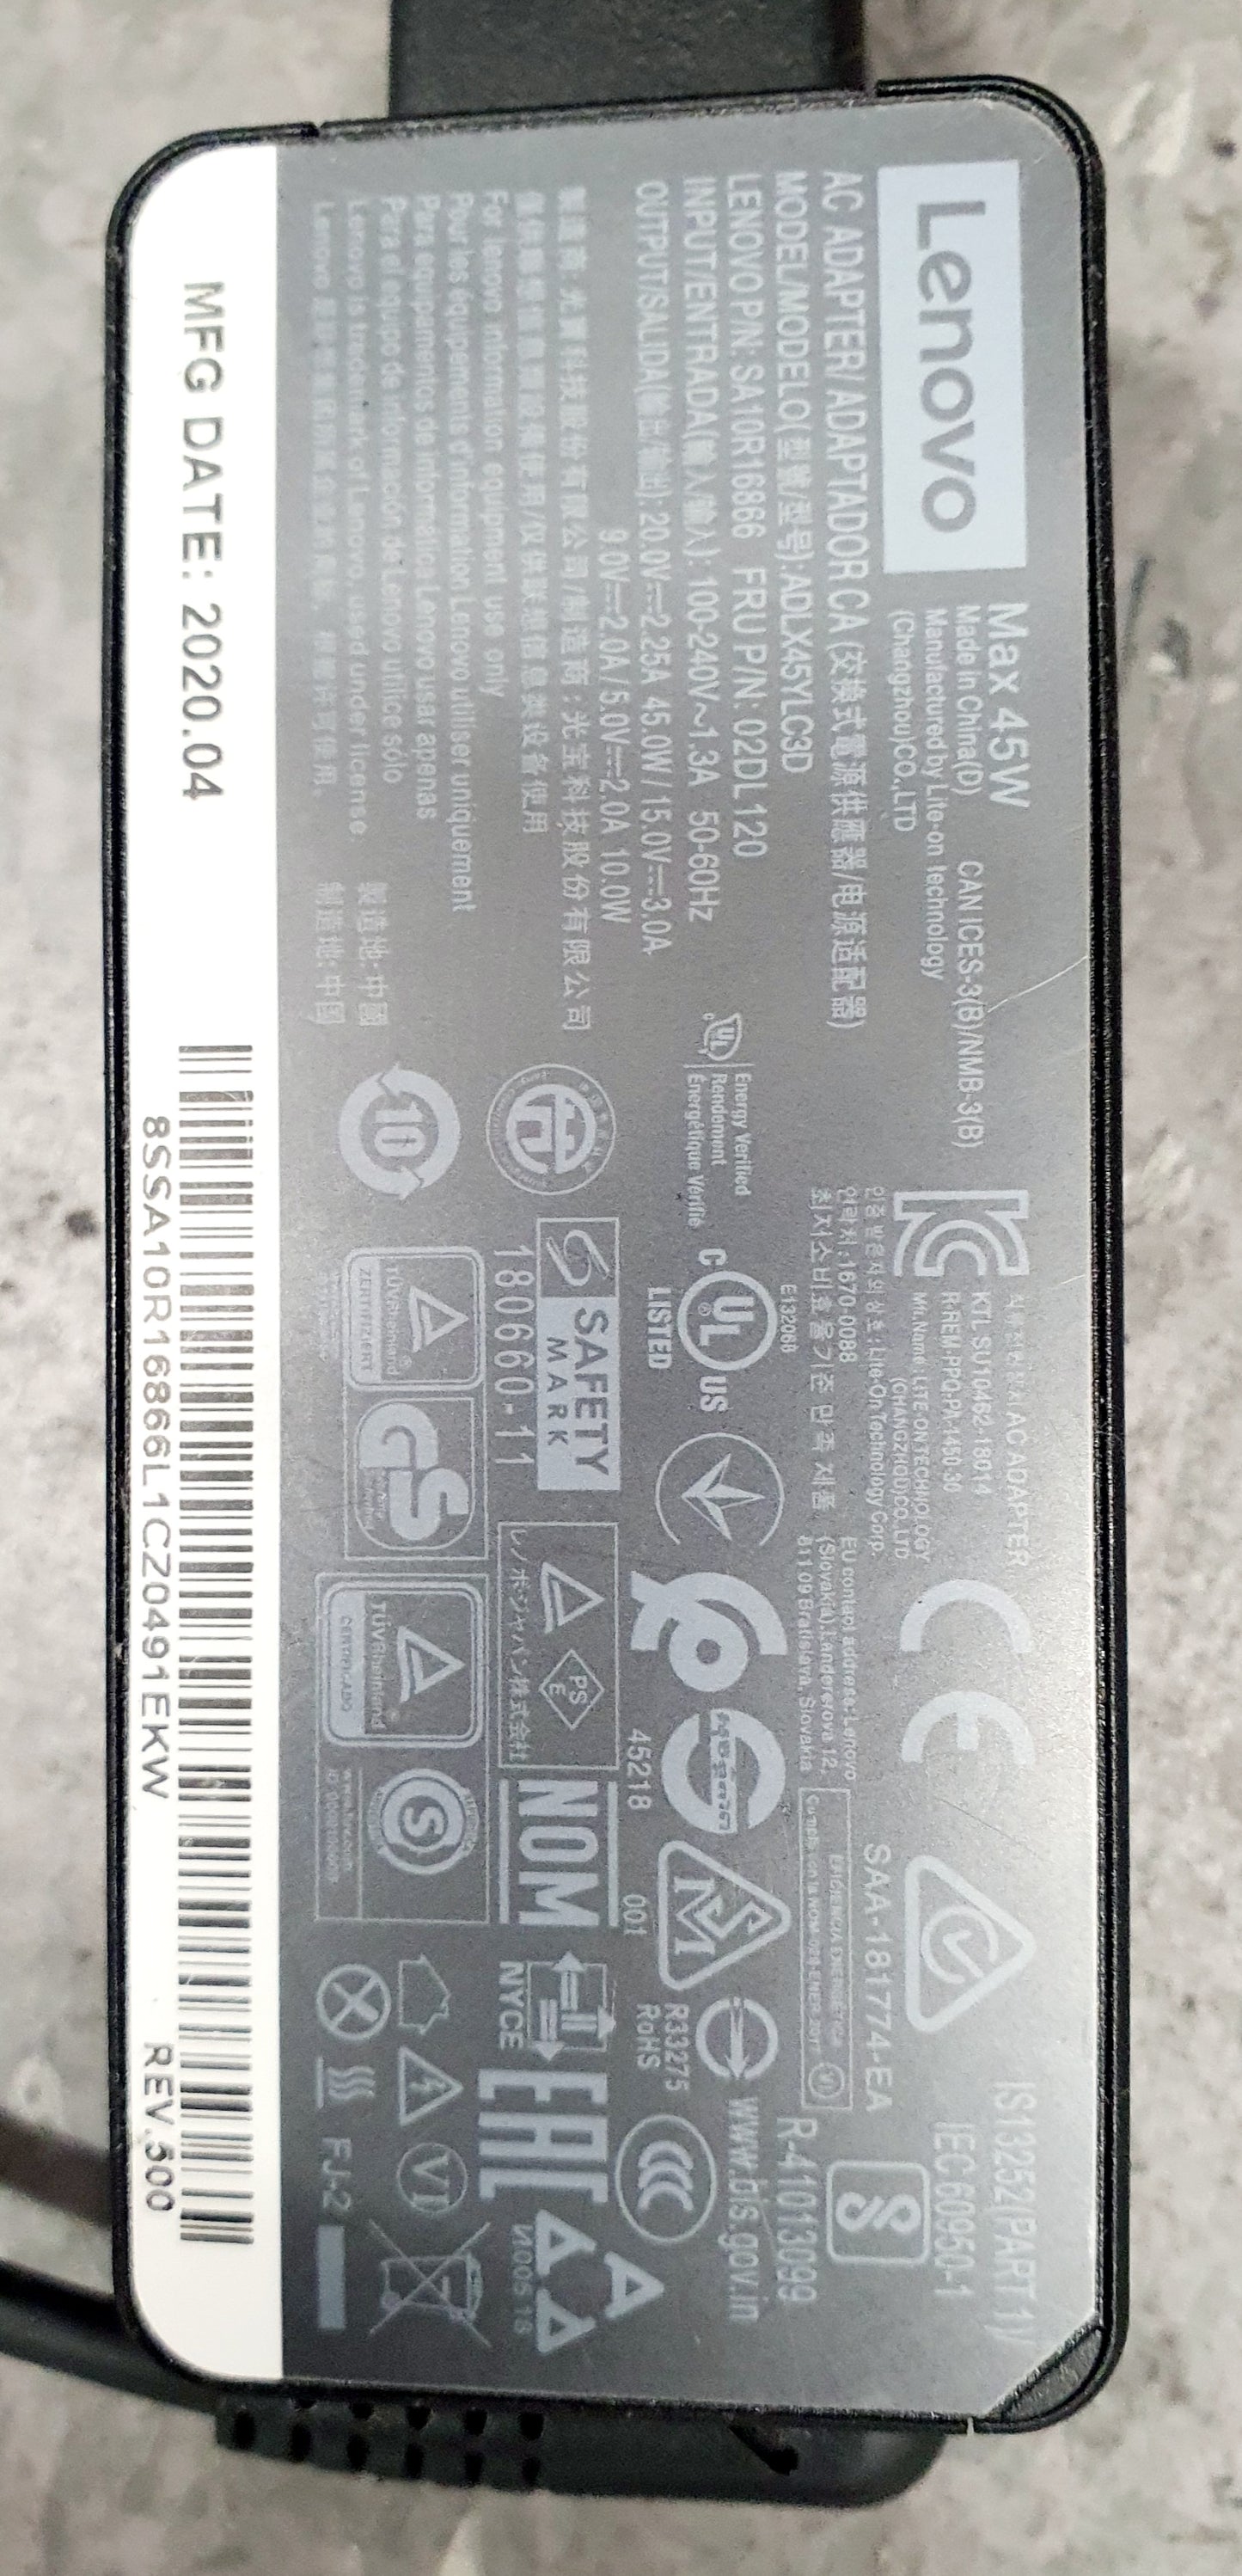 Lenovo 11.6inch 100E Chromebook 2nd Gen Black